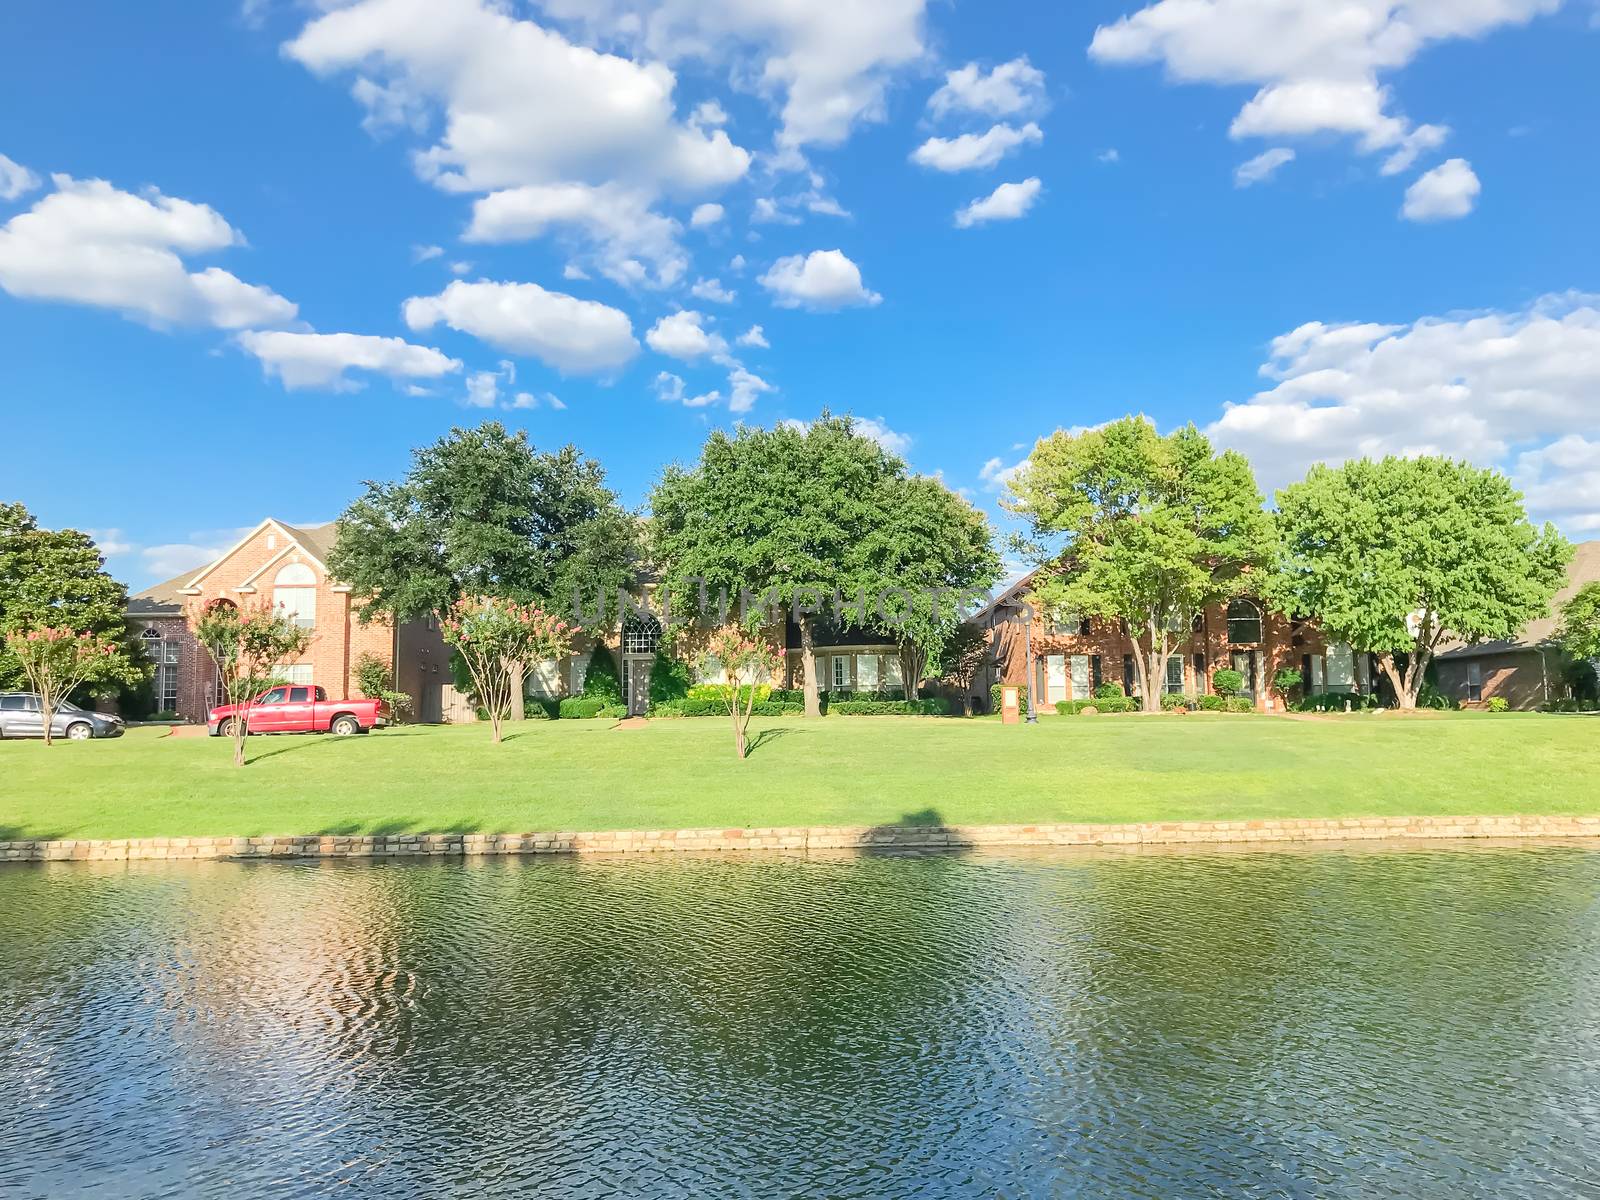 Beautiful riverside residential neighborhood in suburbs Dallas under blue cloud sky by trongnguyen